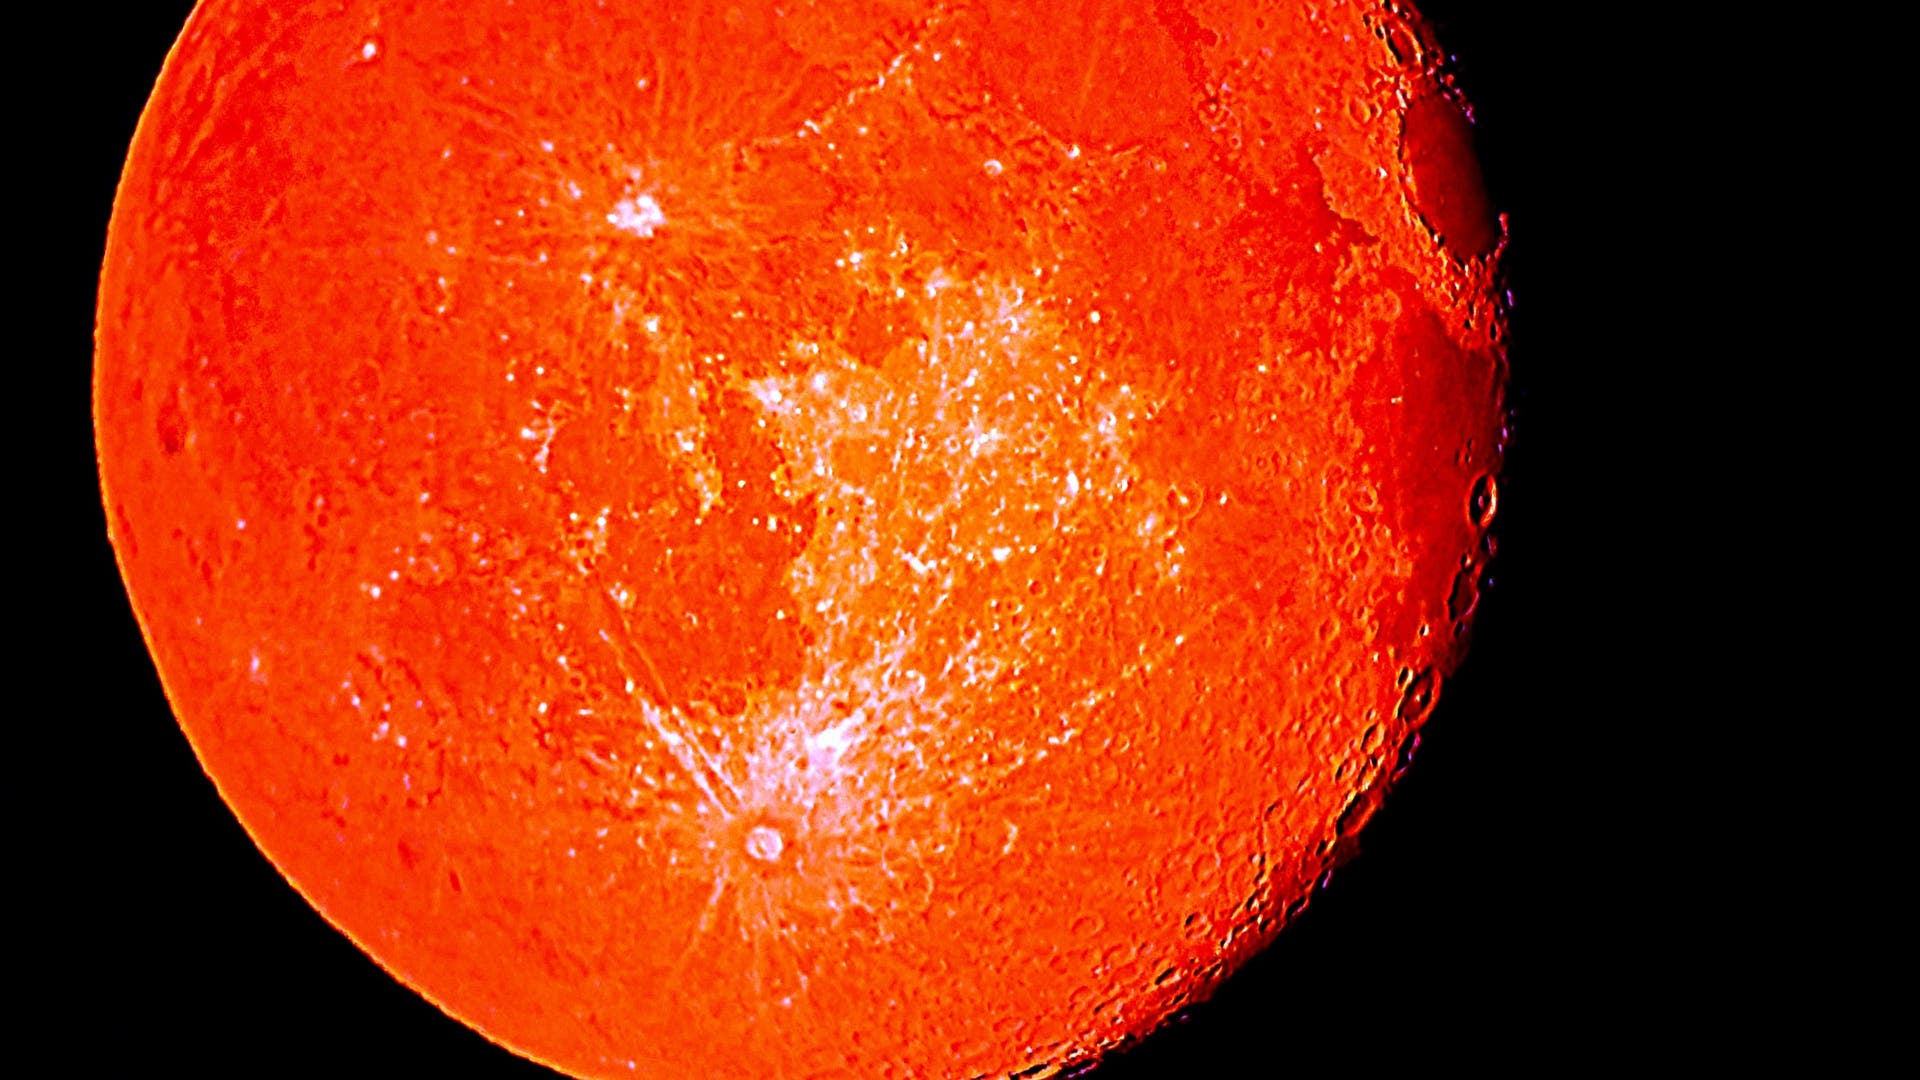 Maan met een rood filter – een spectrum van wetenschap